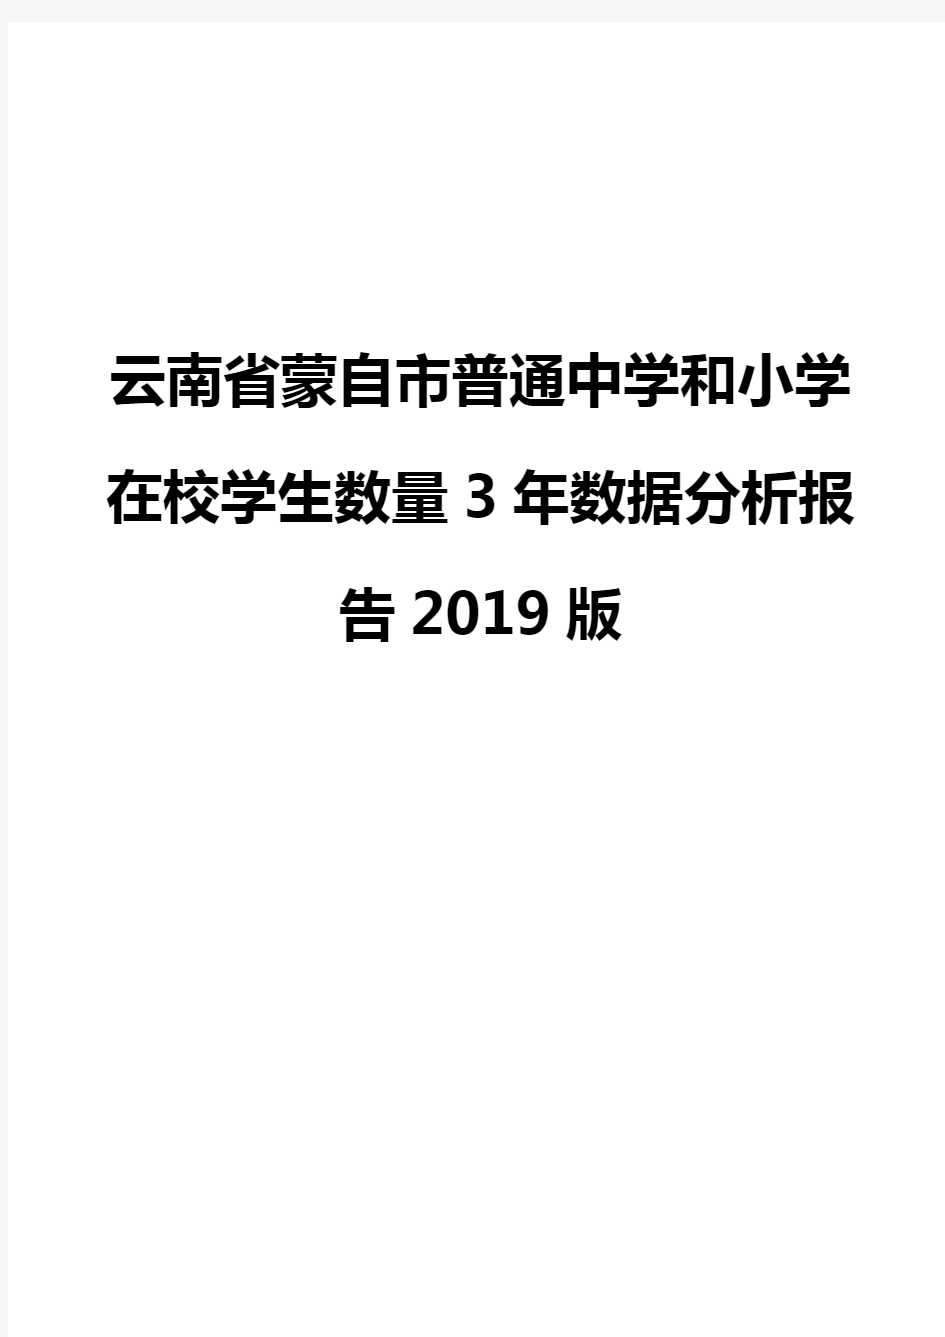 云南省蒙自市普通中学和小学在校学生数量3年数据分析报告2019版